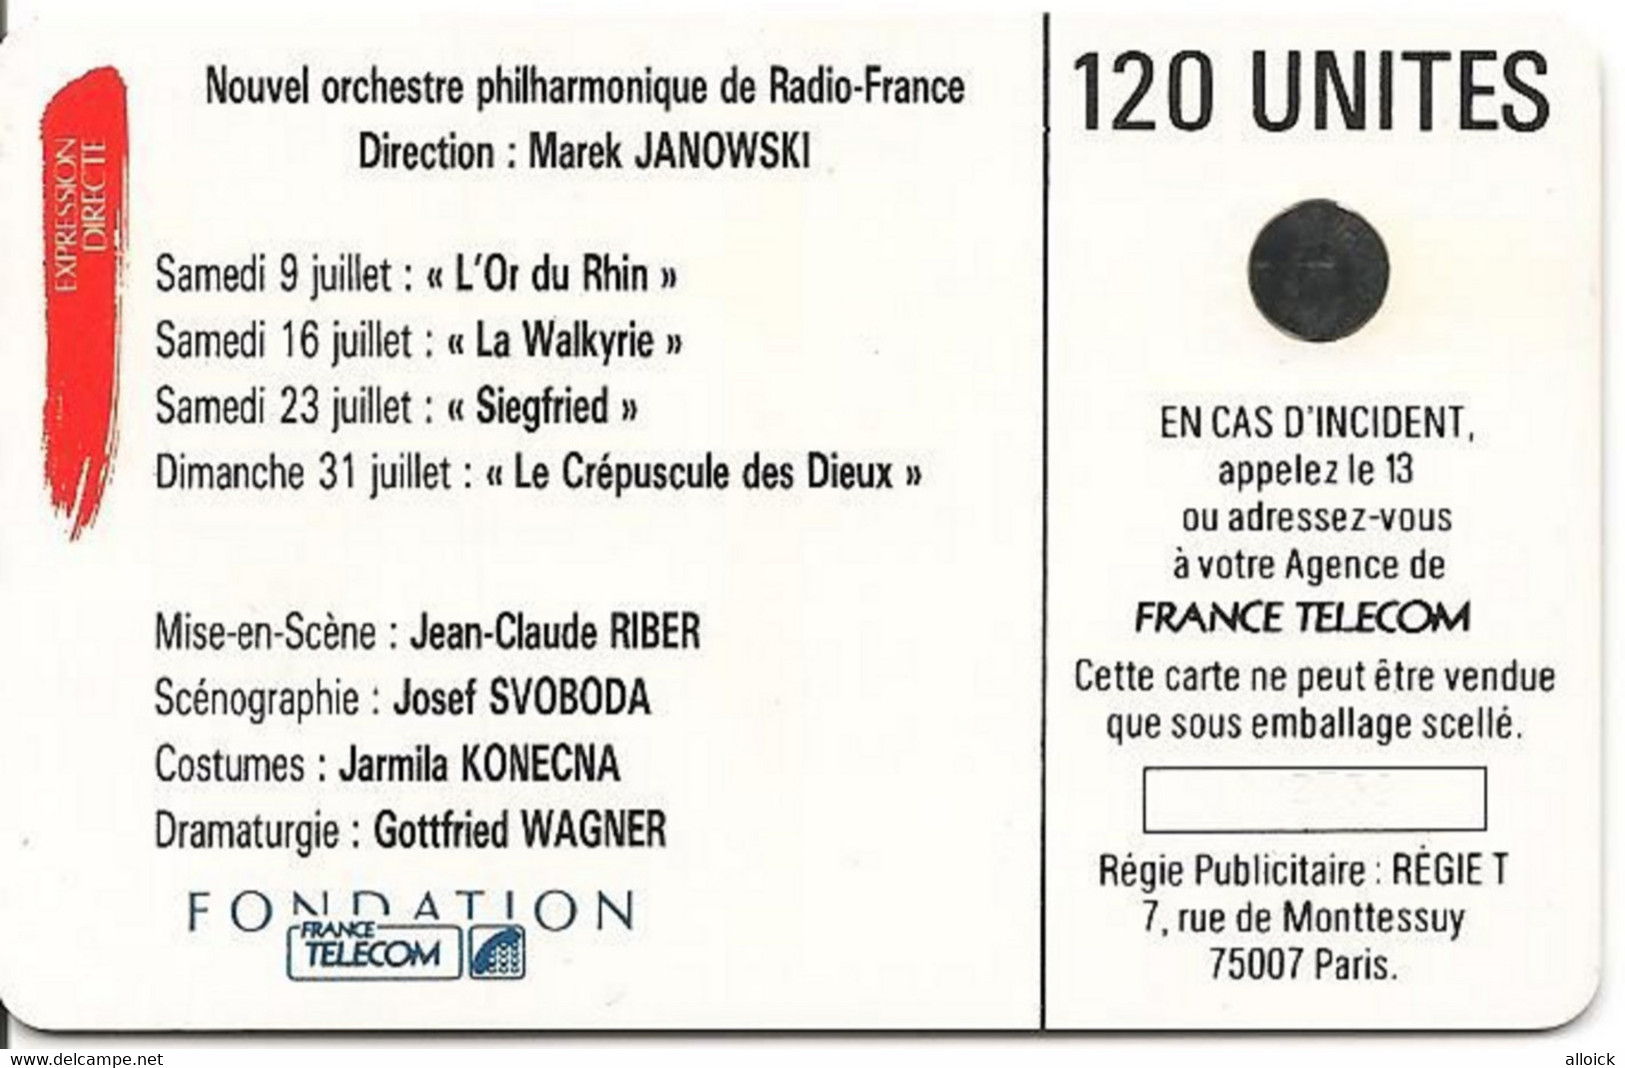 F24 -  Utilisée LUXE  -  WAGNER  -  Chorégie D'Orange    -     Voir Annonce Et Scans  !!! - 1988